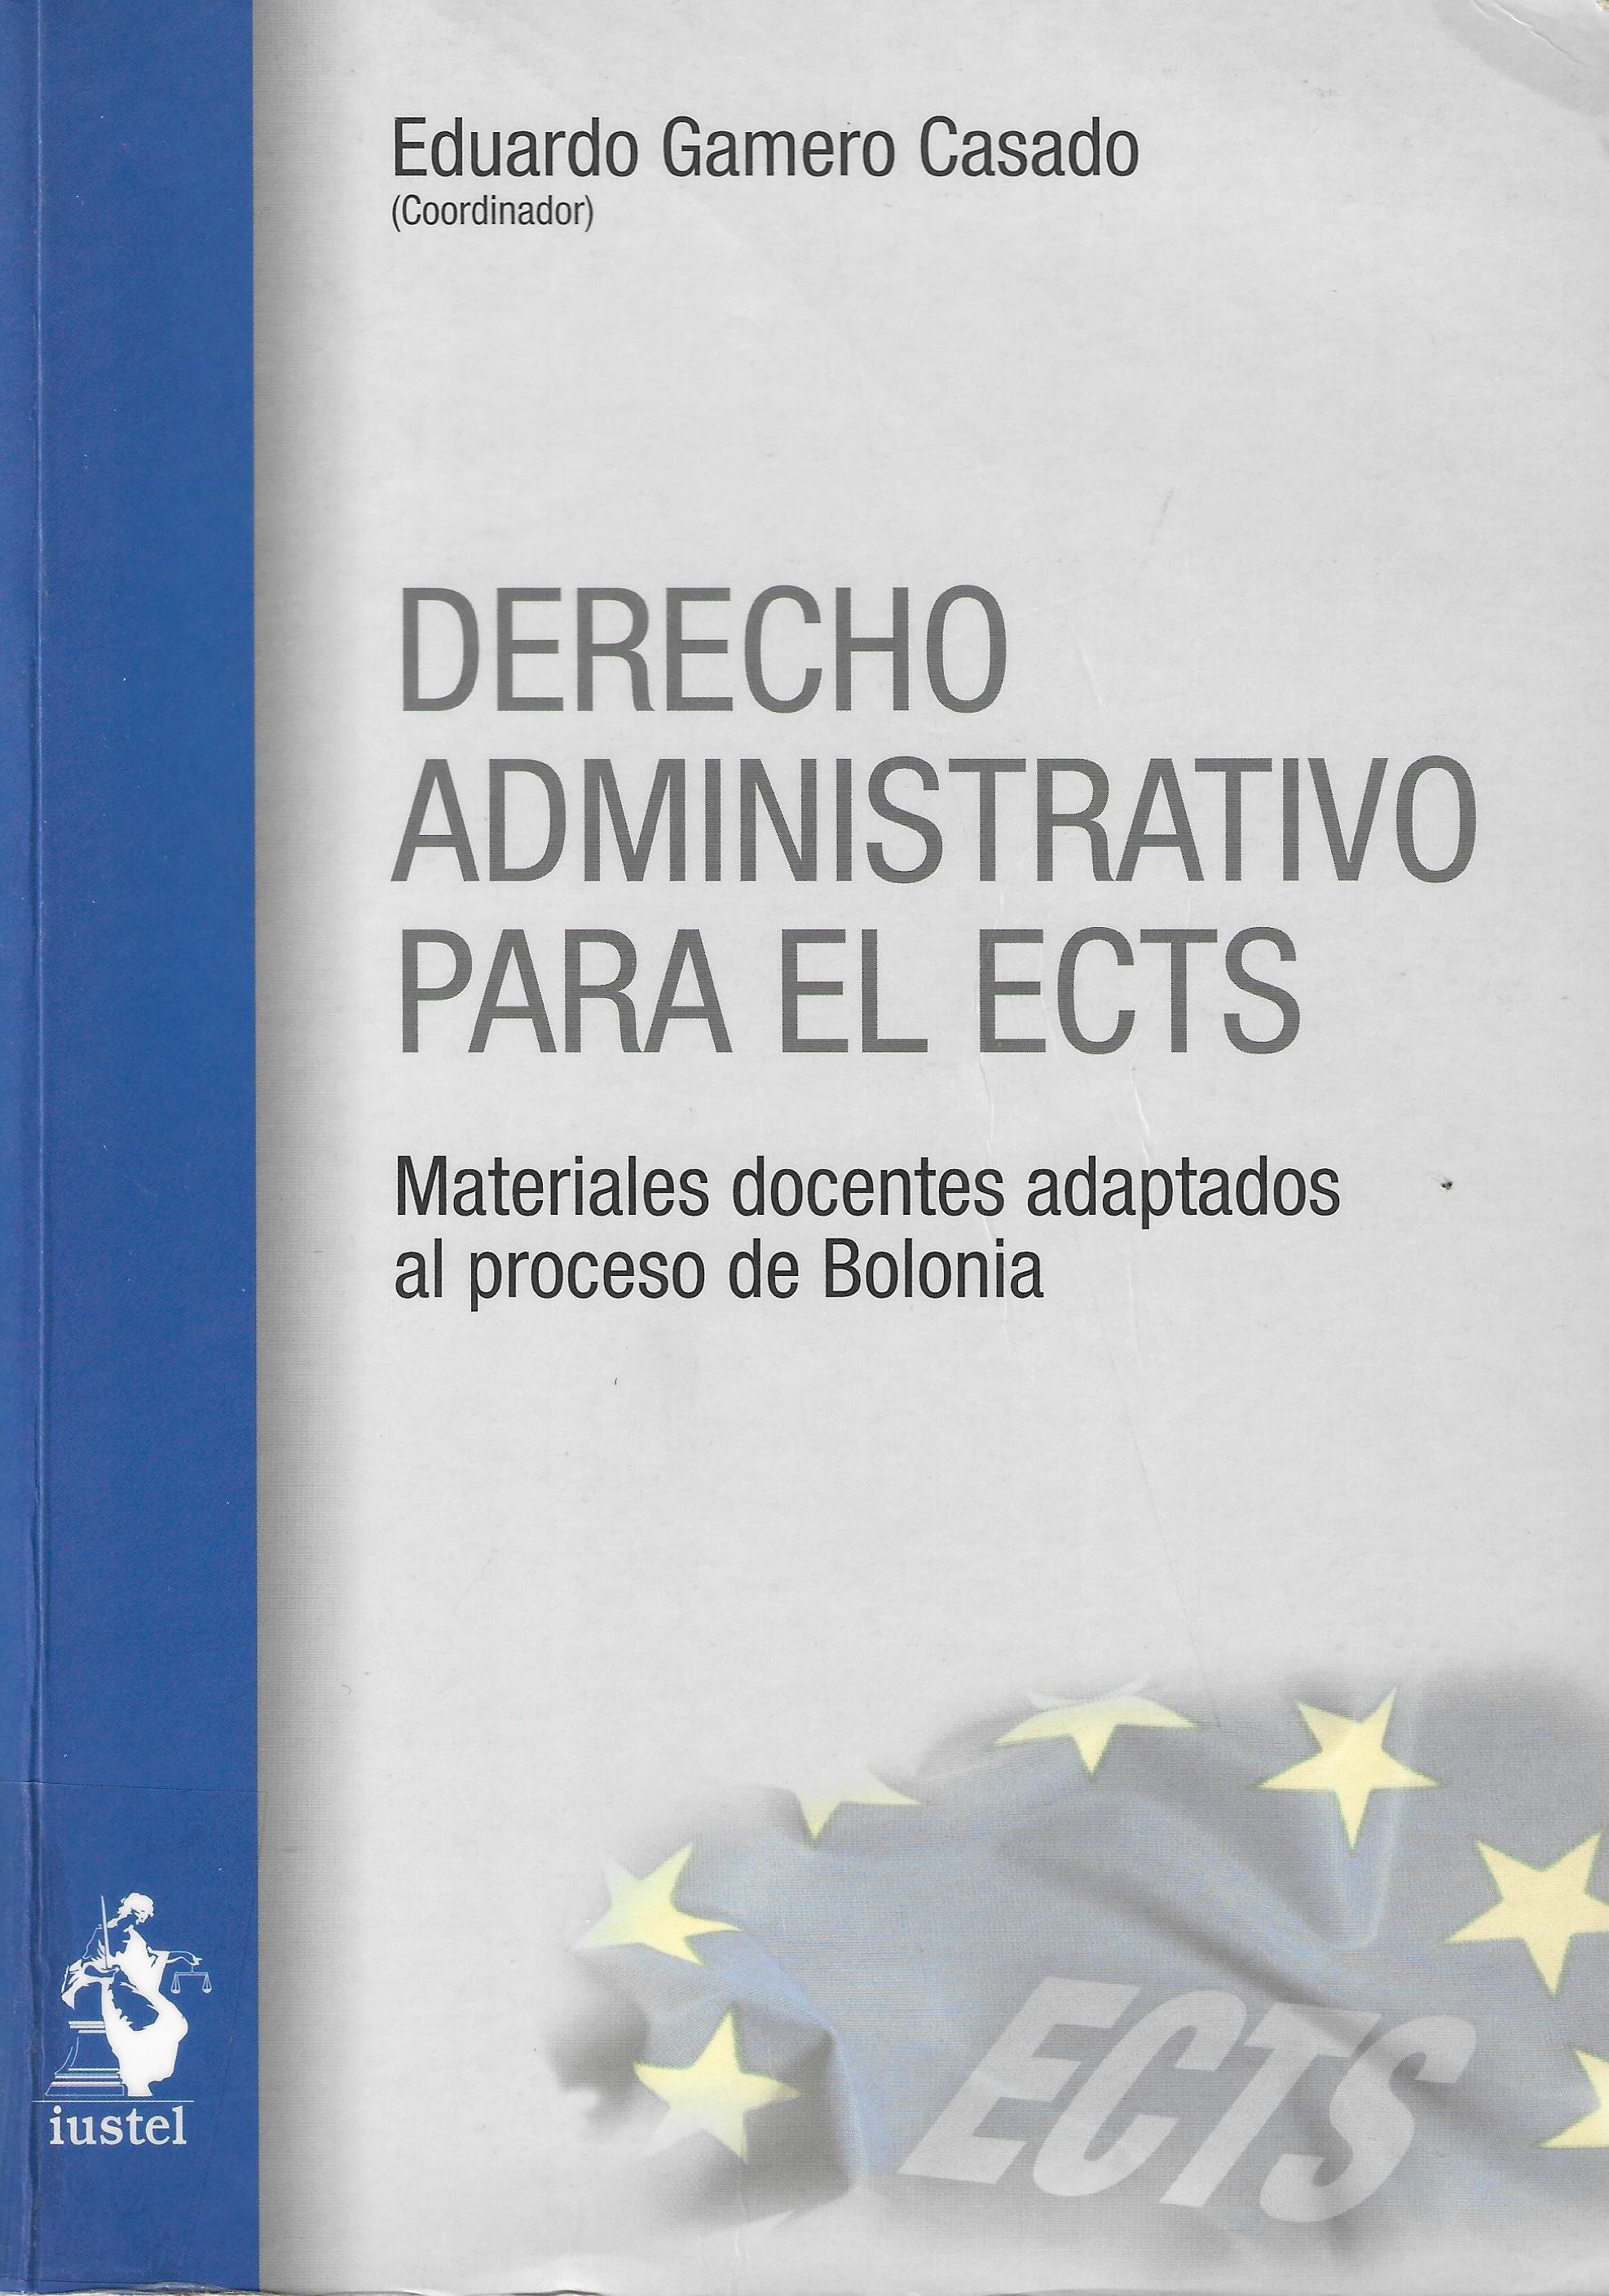 Imagen de portada del libro Derecho Administrativo para el ECTS